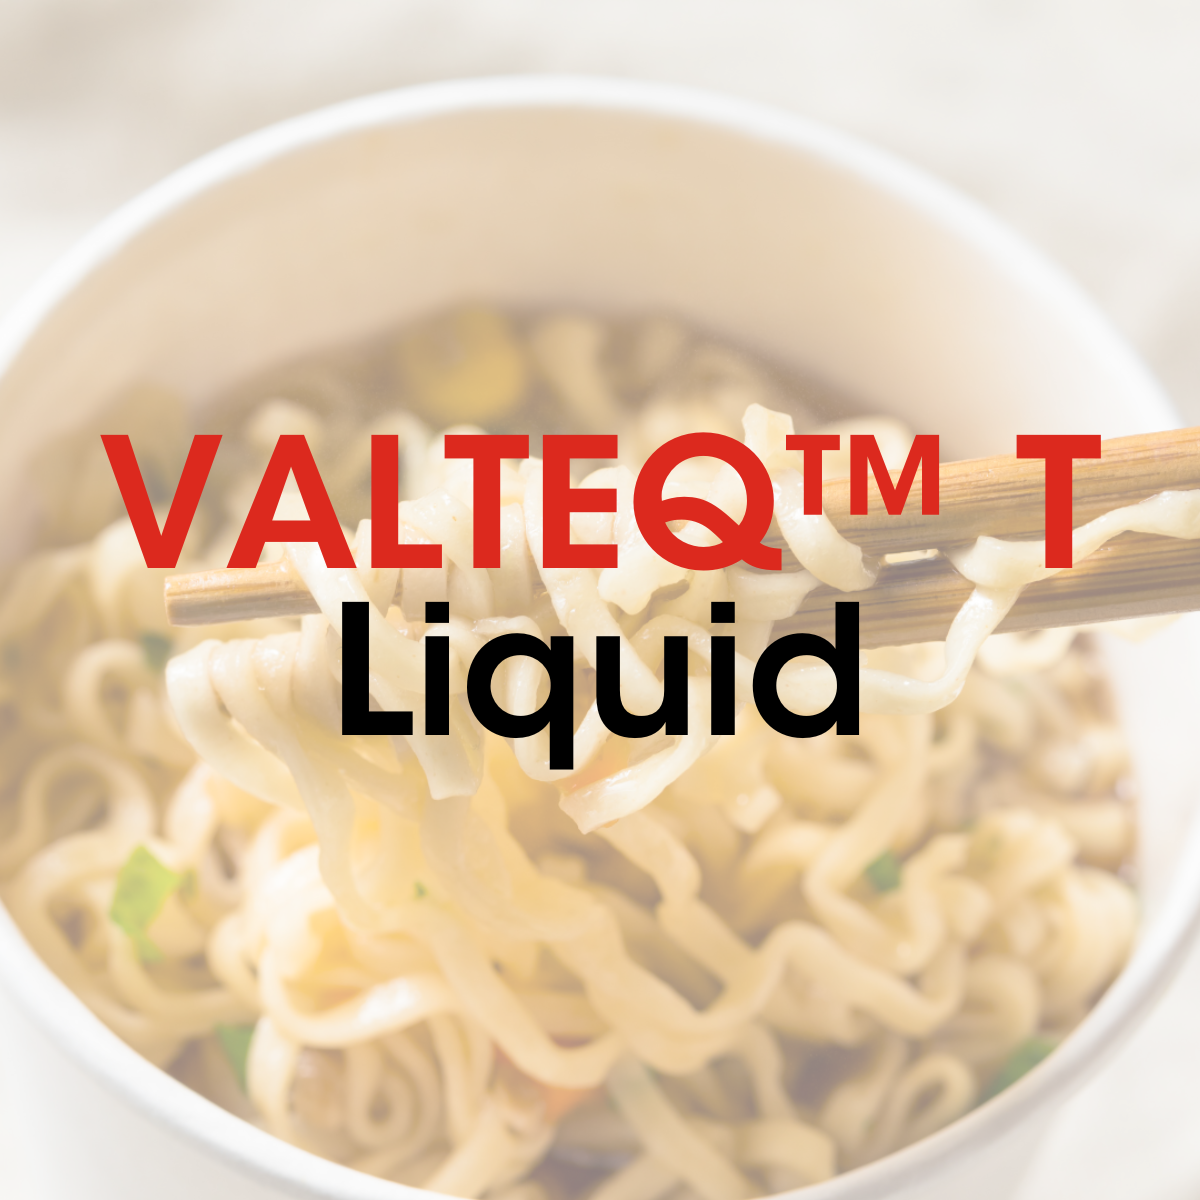 VALTEQ™ T Liquid